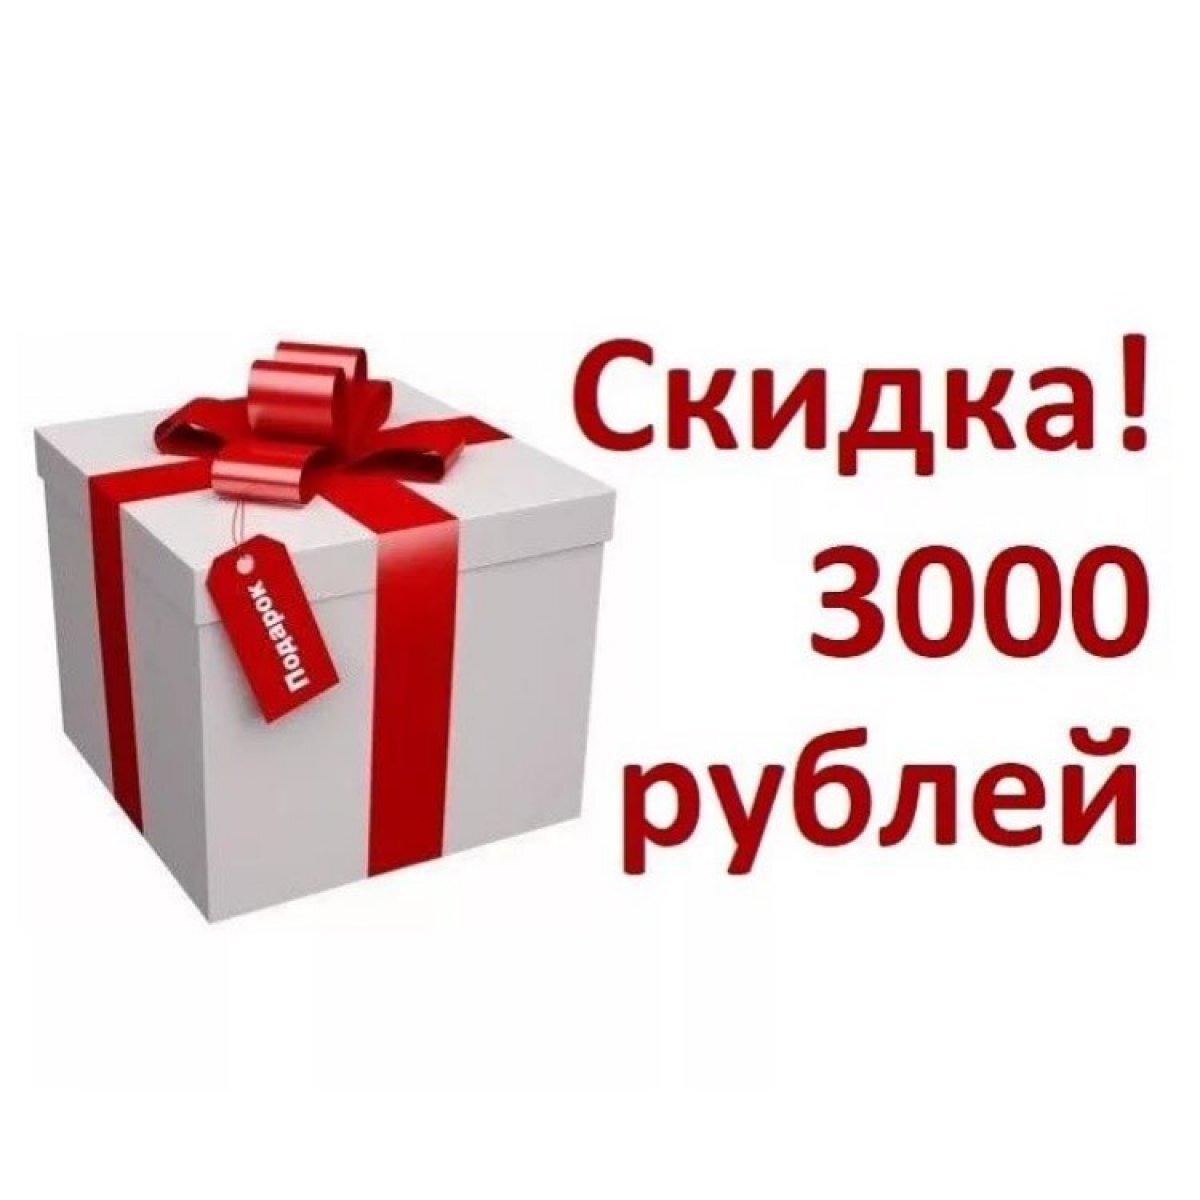 В размере 3000 рублей. 3000 Рублей. Подарок скидка. Подарок 3000 руб. Подарок скидка 3000.